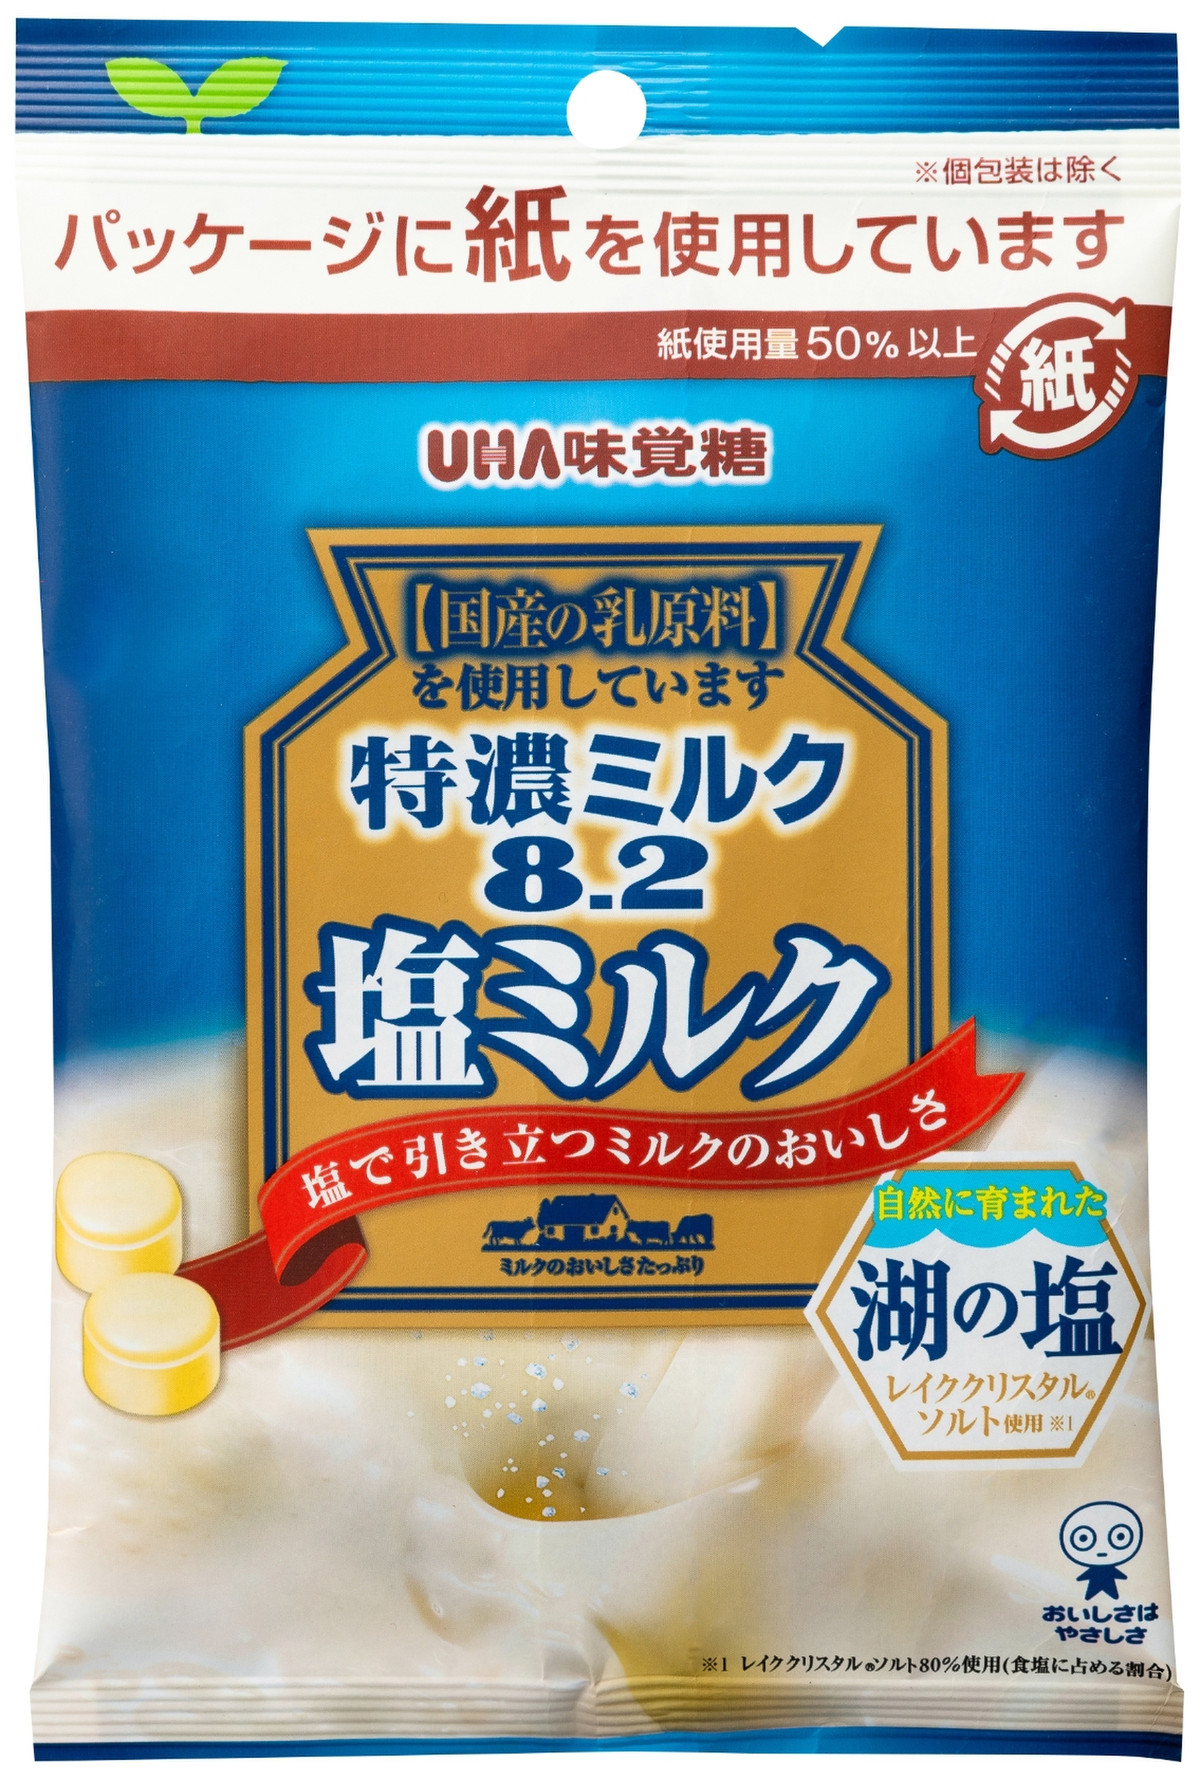 高評価 O Uha味覚糖 特濃ミルク8 2 塩ミルク のクチコミ 評価 Ck さん もぐナビ